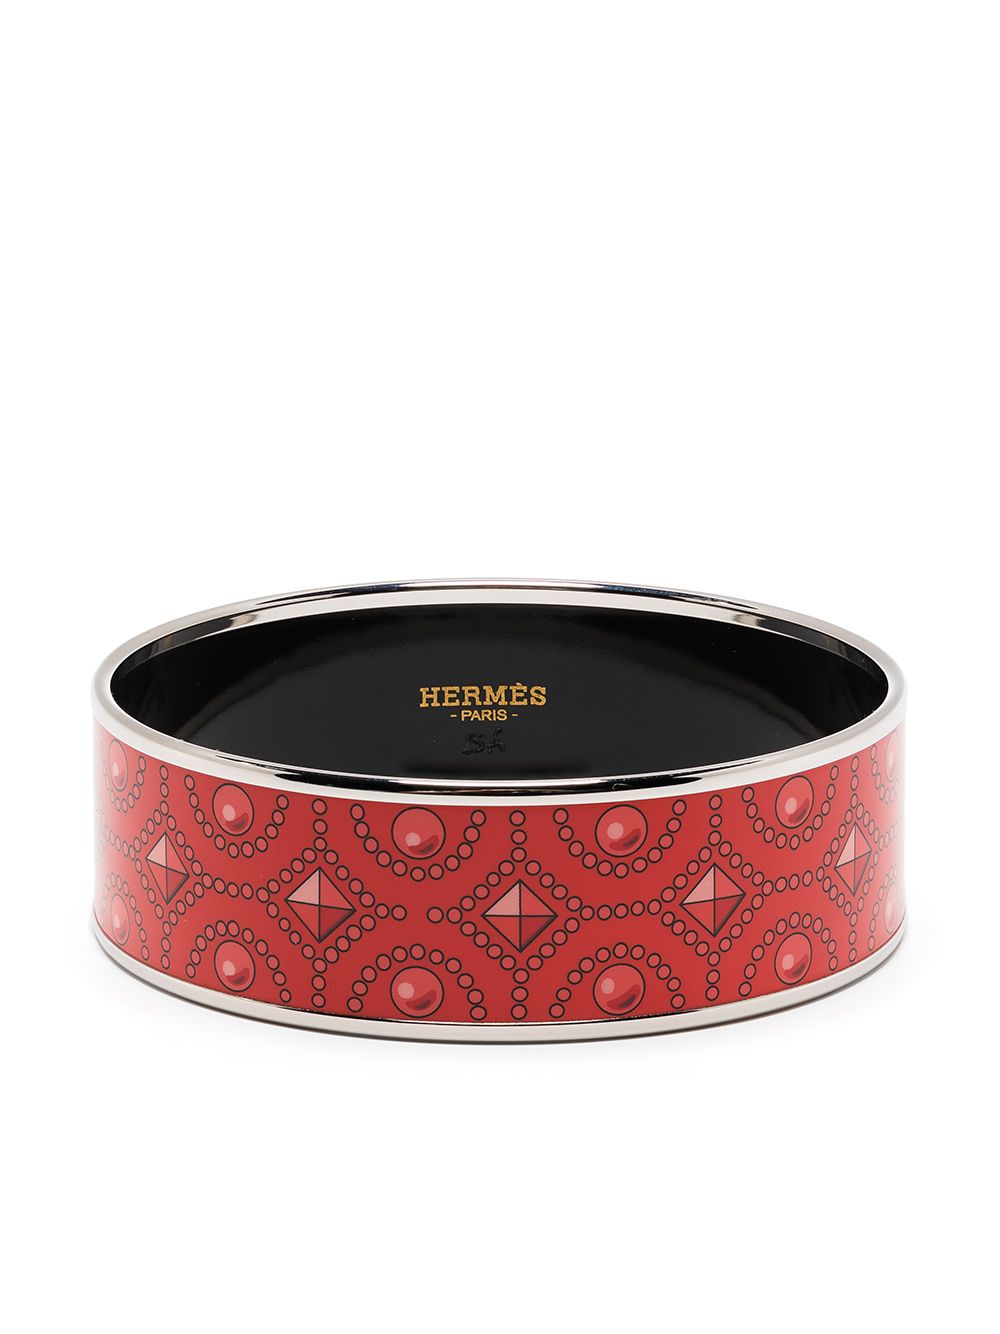 Hermès Pre-Owned pre-owned belt motif bangle bracelet - Red von Hermès Pre-Owned